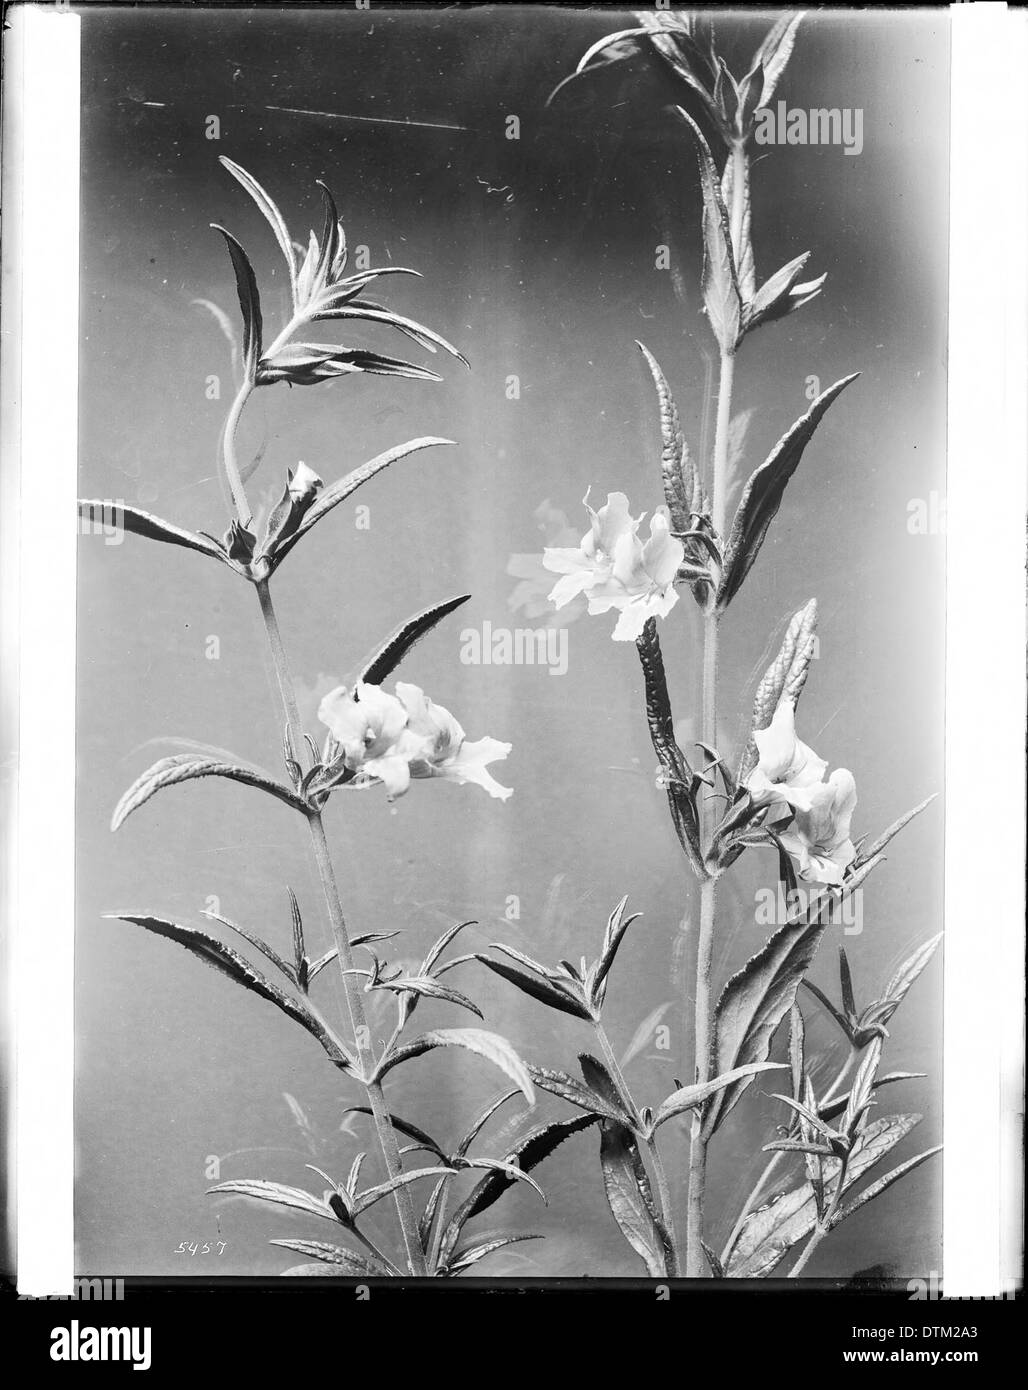 Spécimen de Mimulus glutiniosus, une fleur sauvage, ca.1920 Banque D'Images